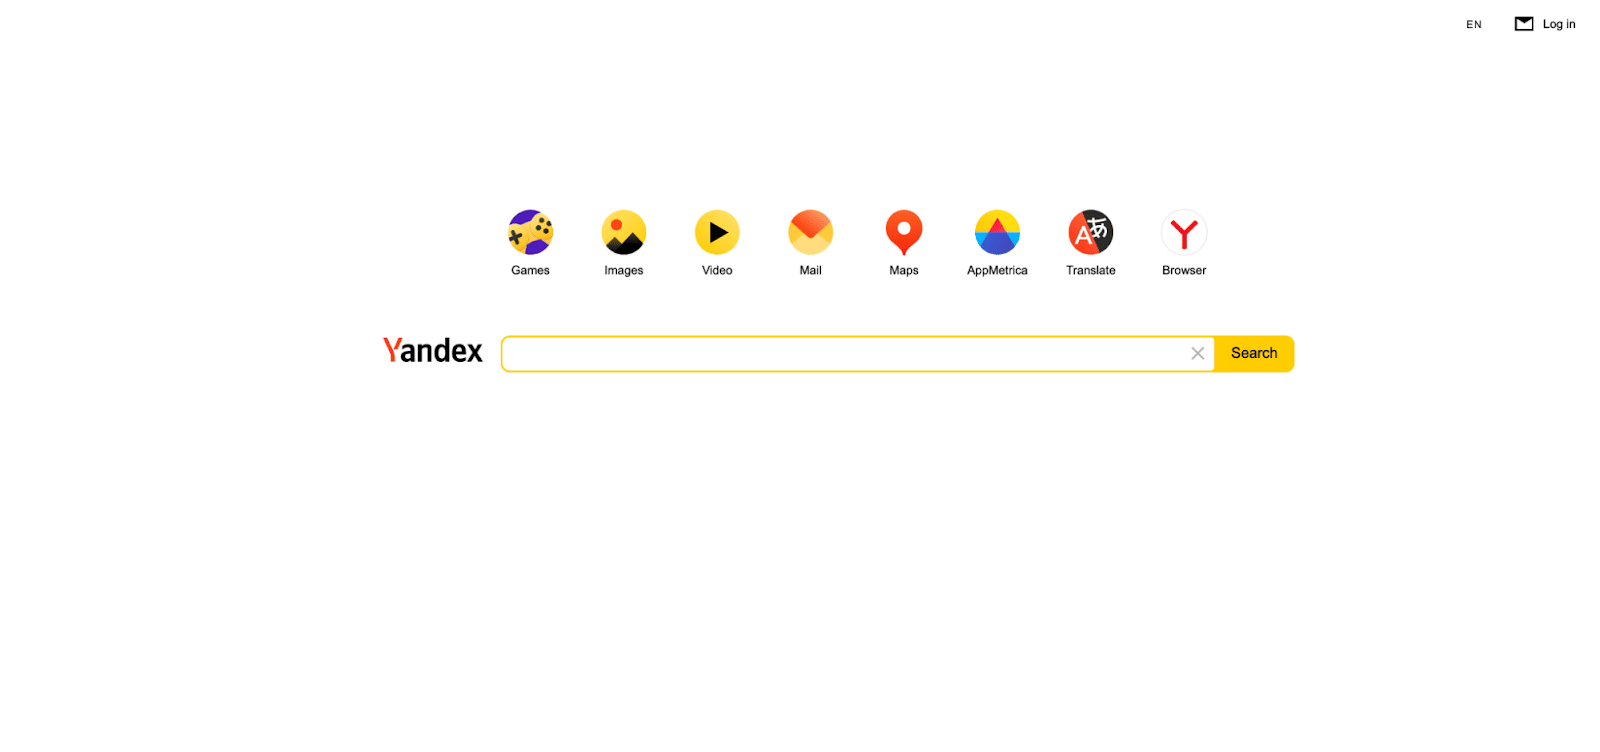 Yandex Bot indiziert die russische Suchmaschine, Yandex